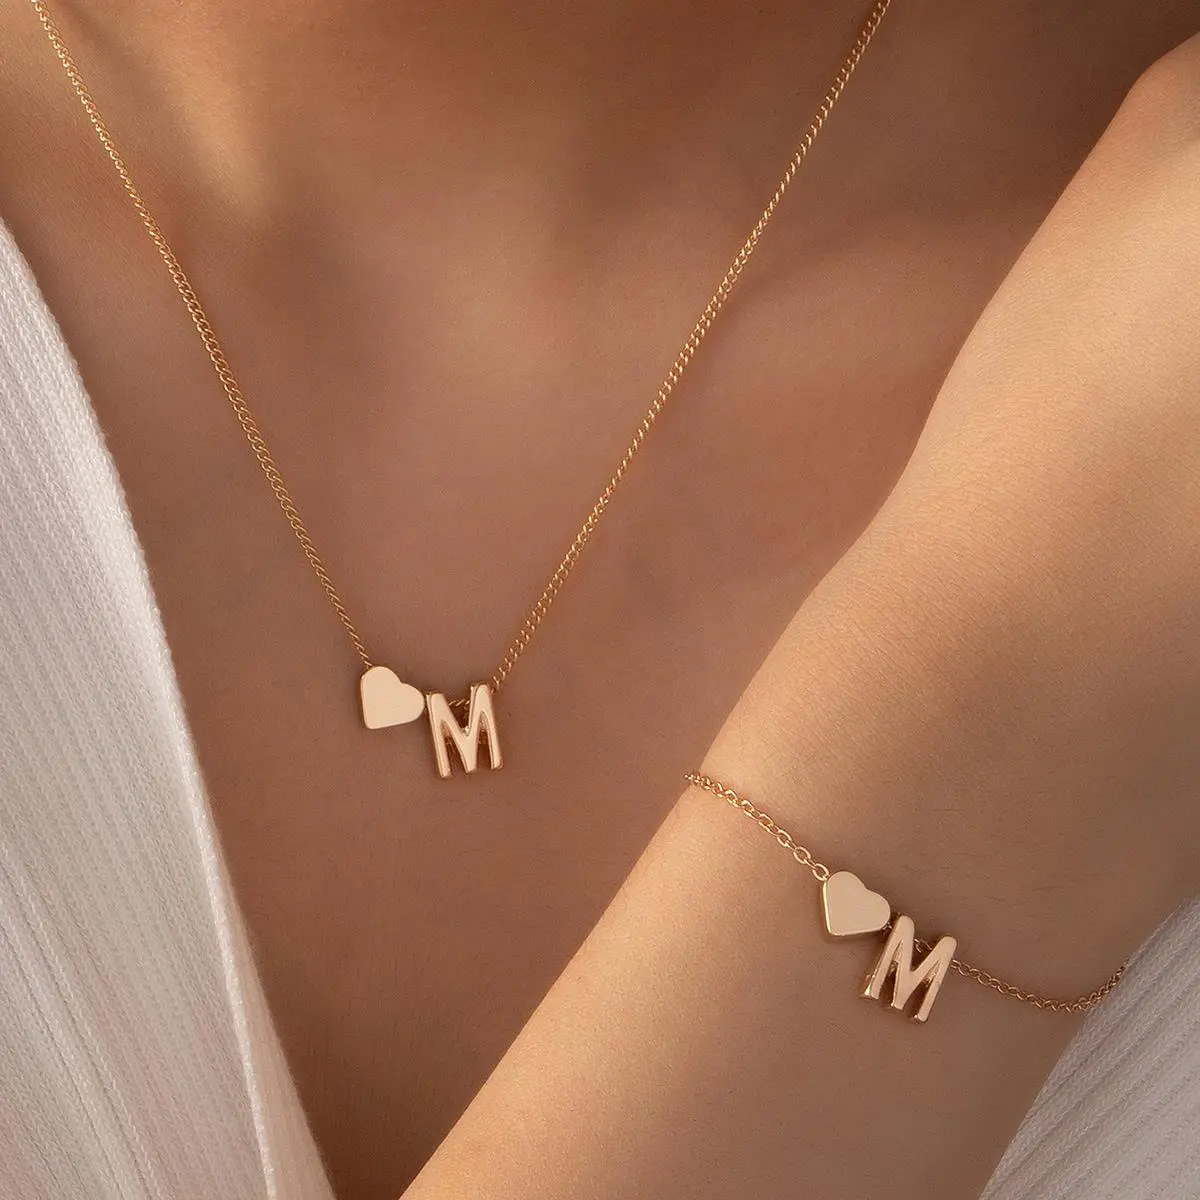 Exquisito collar de cadena personalizado de acero inoxidable para mujer, collar con colgante de corazón con letras del alfabeto